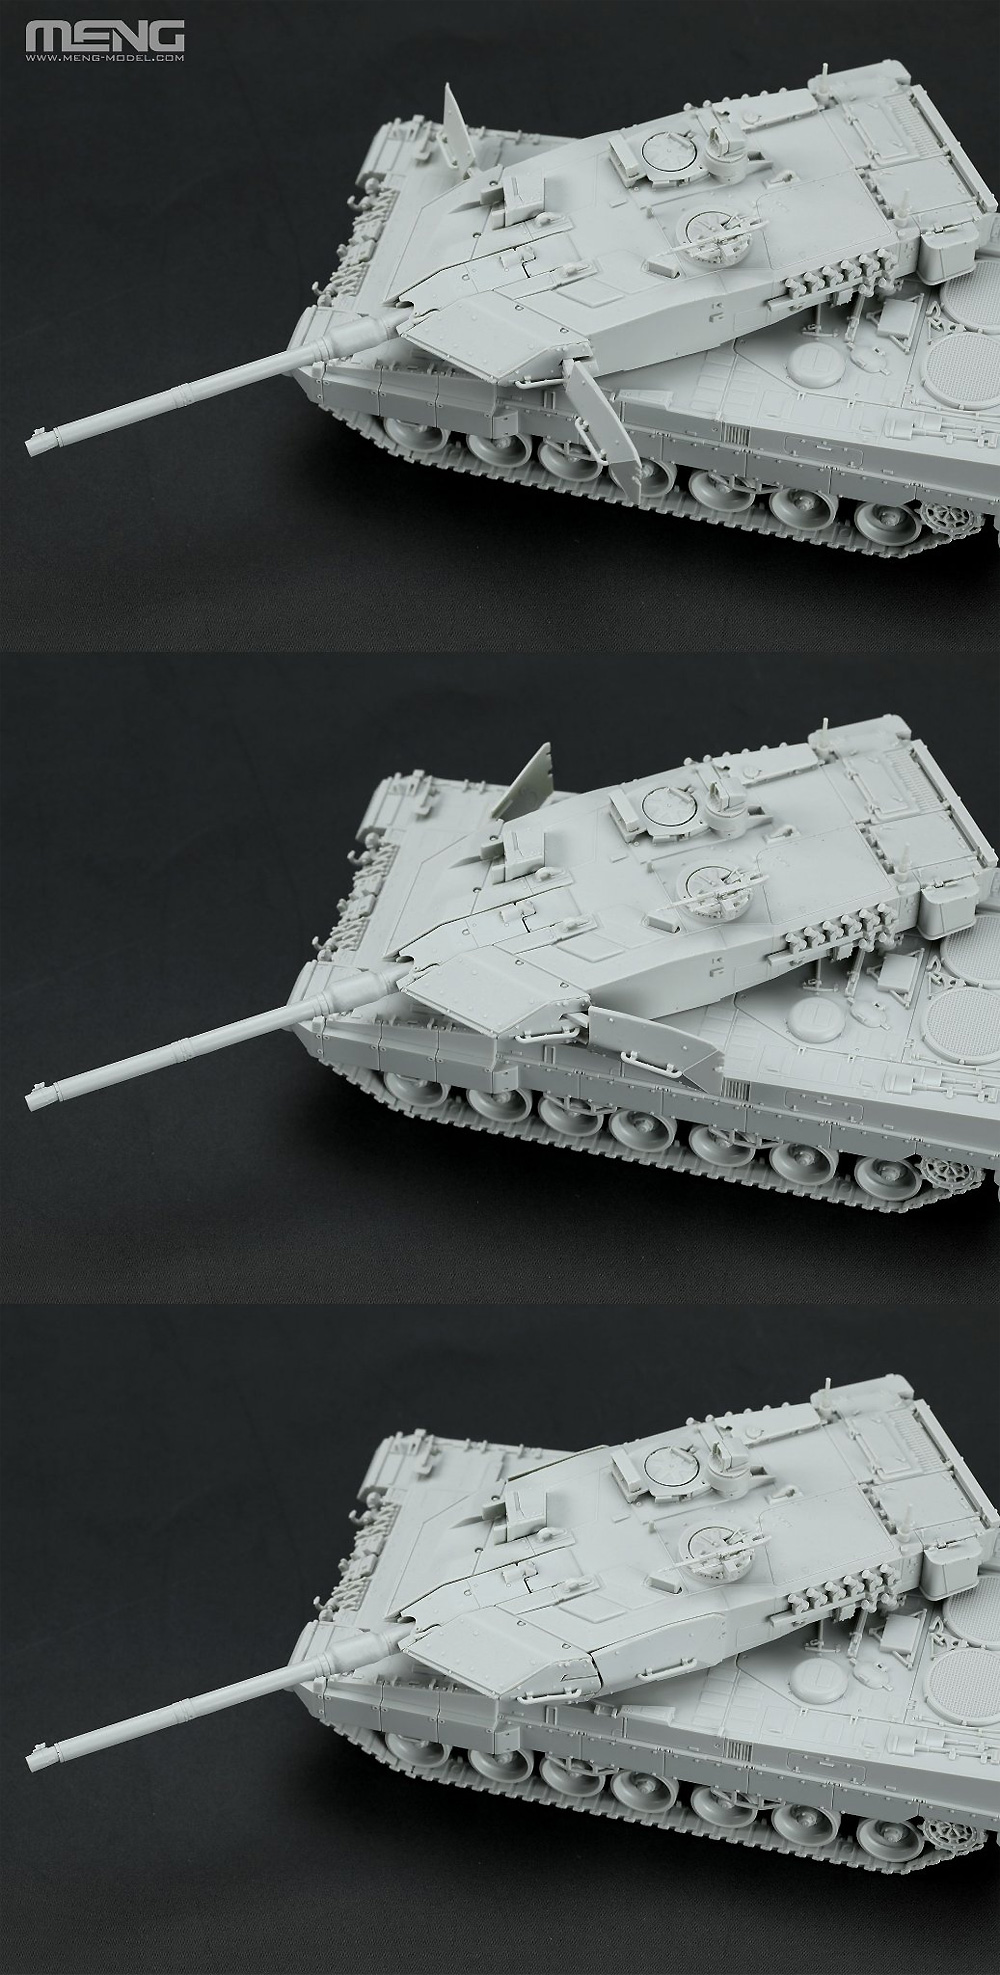 ドイツ主力戦車 レオパルト 2A7 プラモデル (MENG-MODEL 1/72 AFV No.M72-002) 商品画像_4